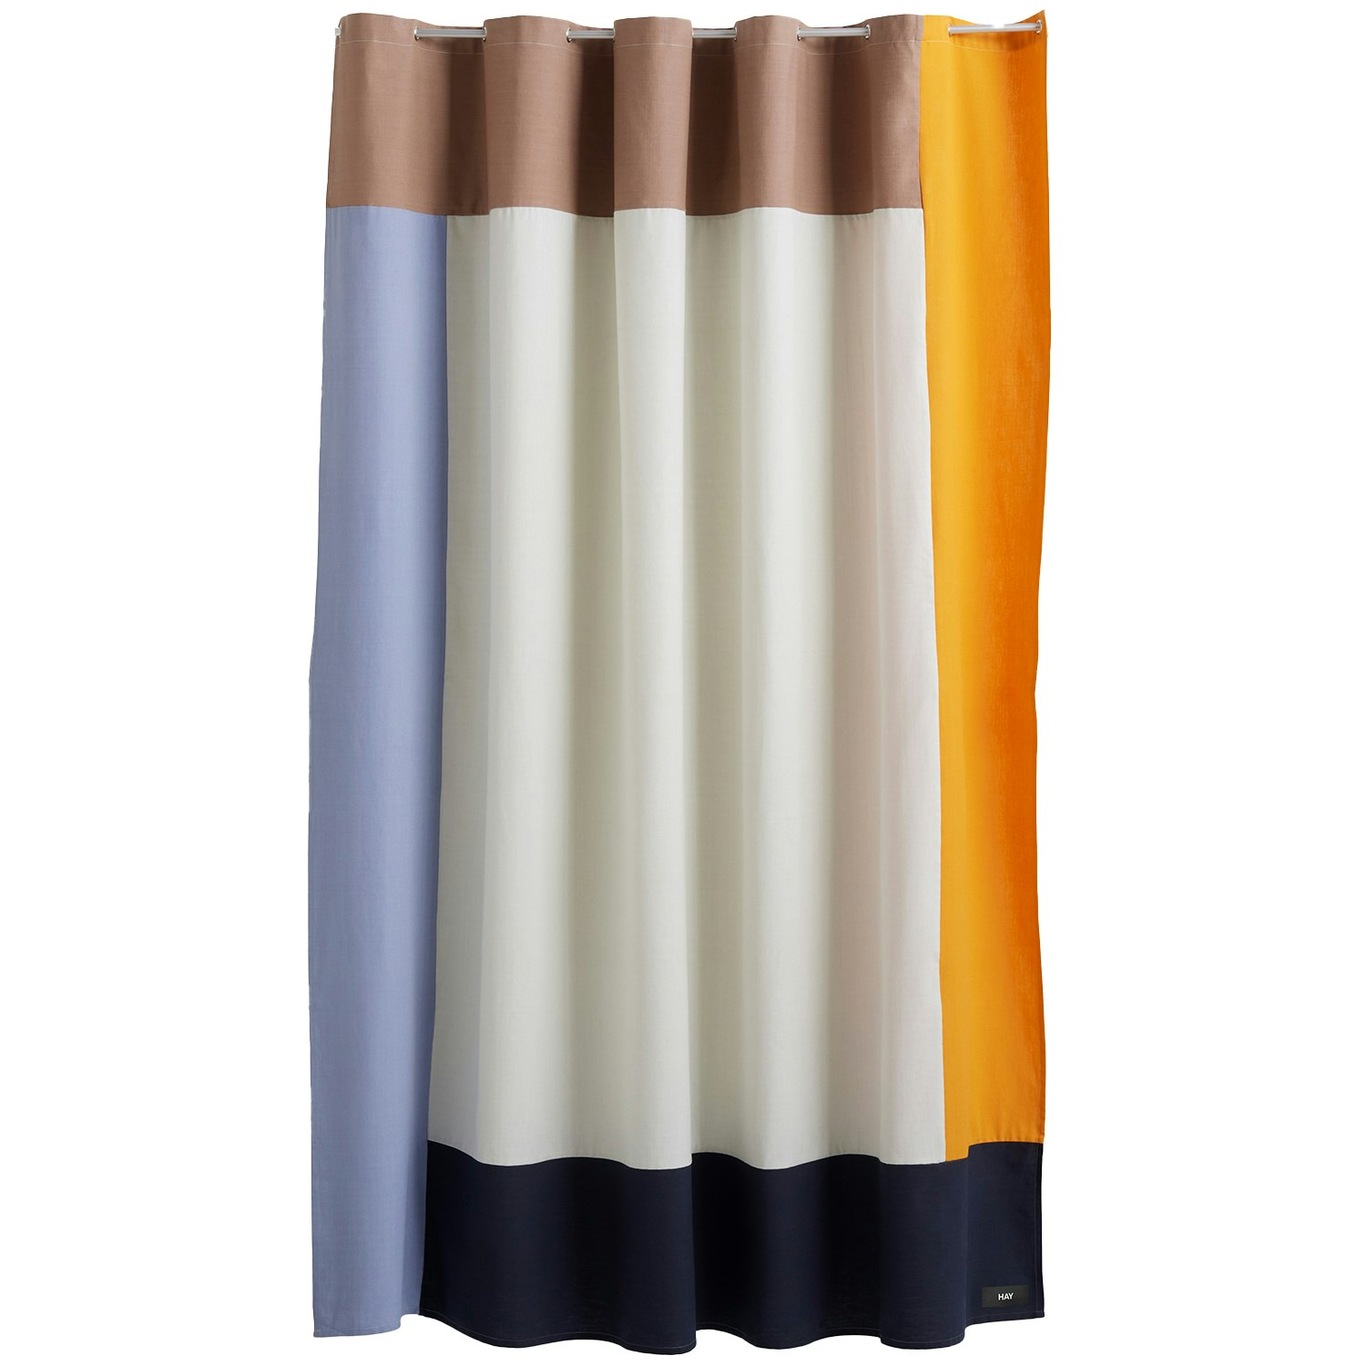 Pivot Shower Curtain, Cream